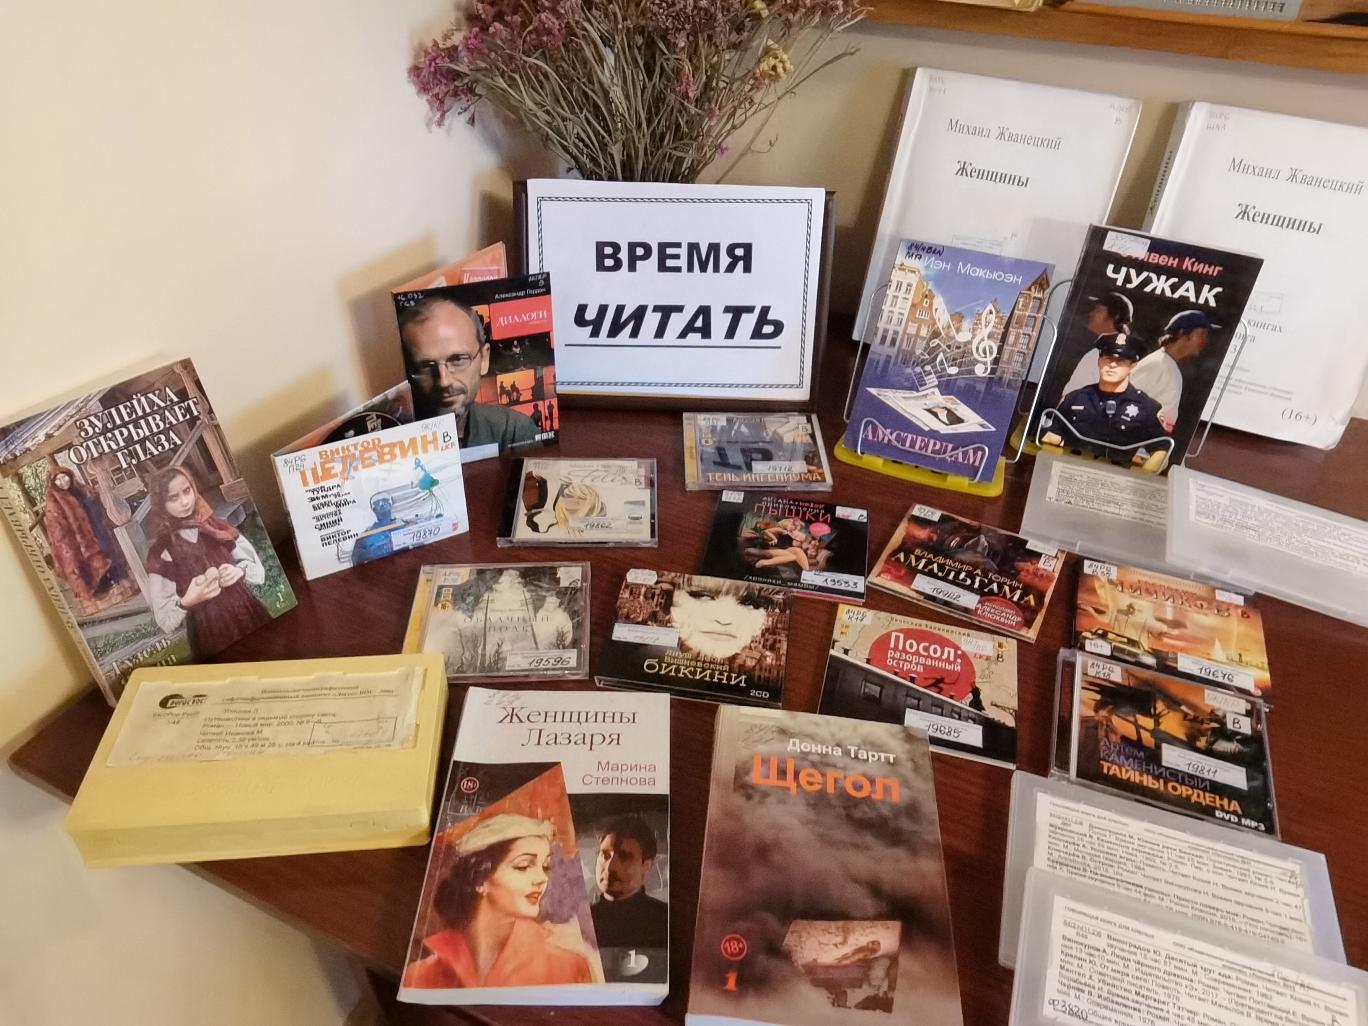 Книжная выставка «Время читать» - книжная выставка современных российских и зарубежных писателей. (16+)